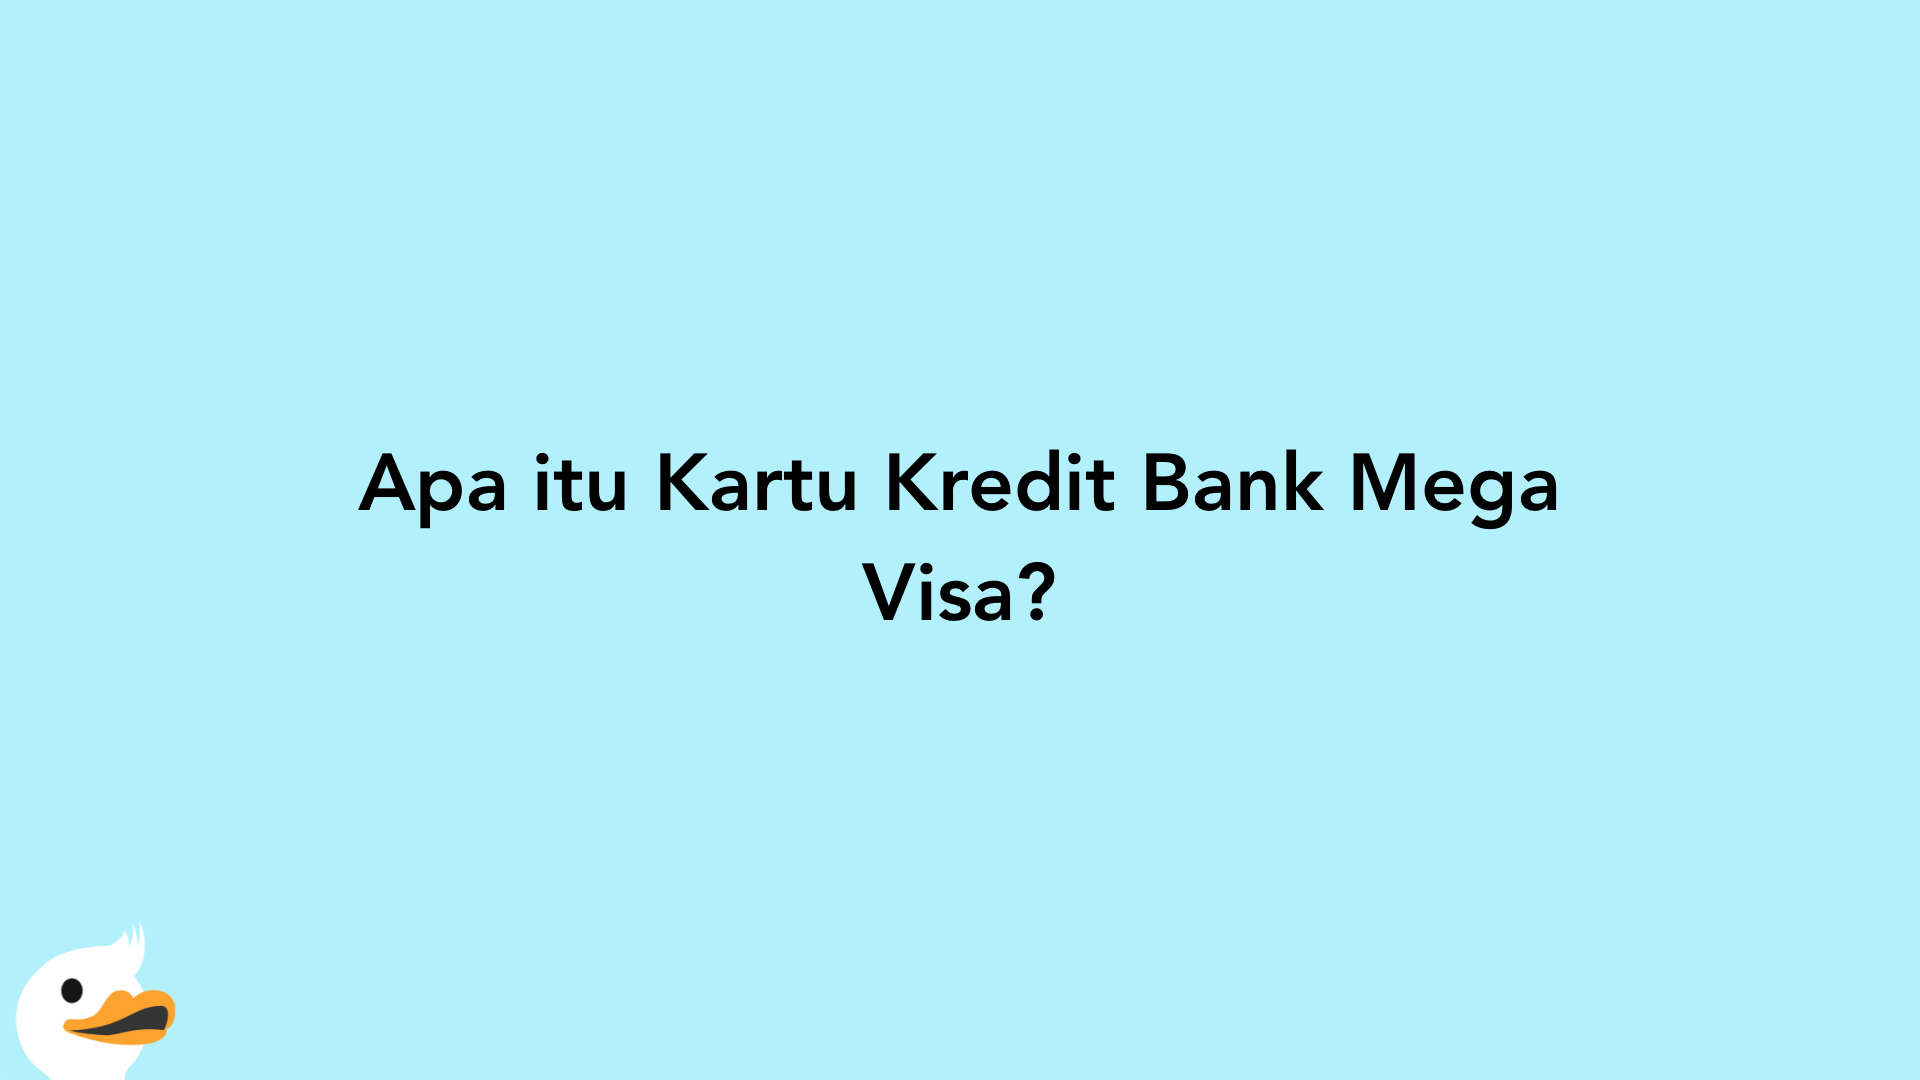 Apa itu Kartu Kredit Bank Mega Visa?